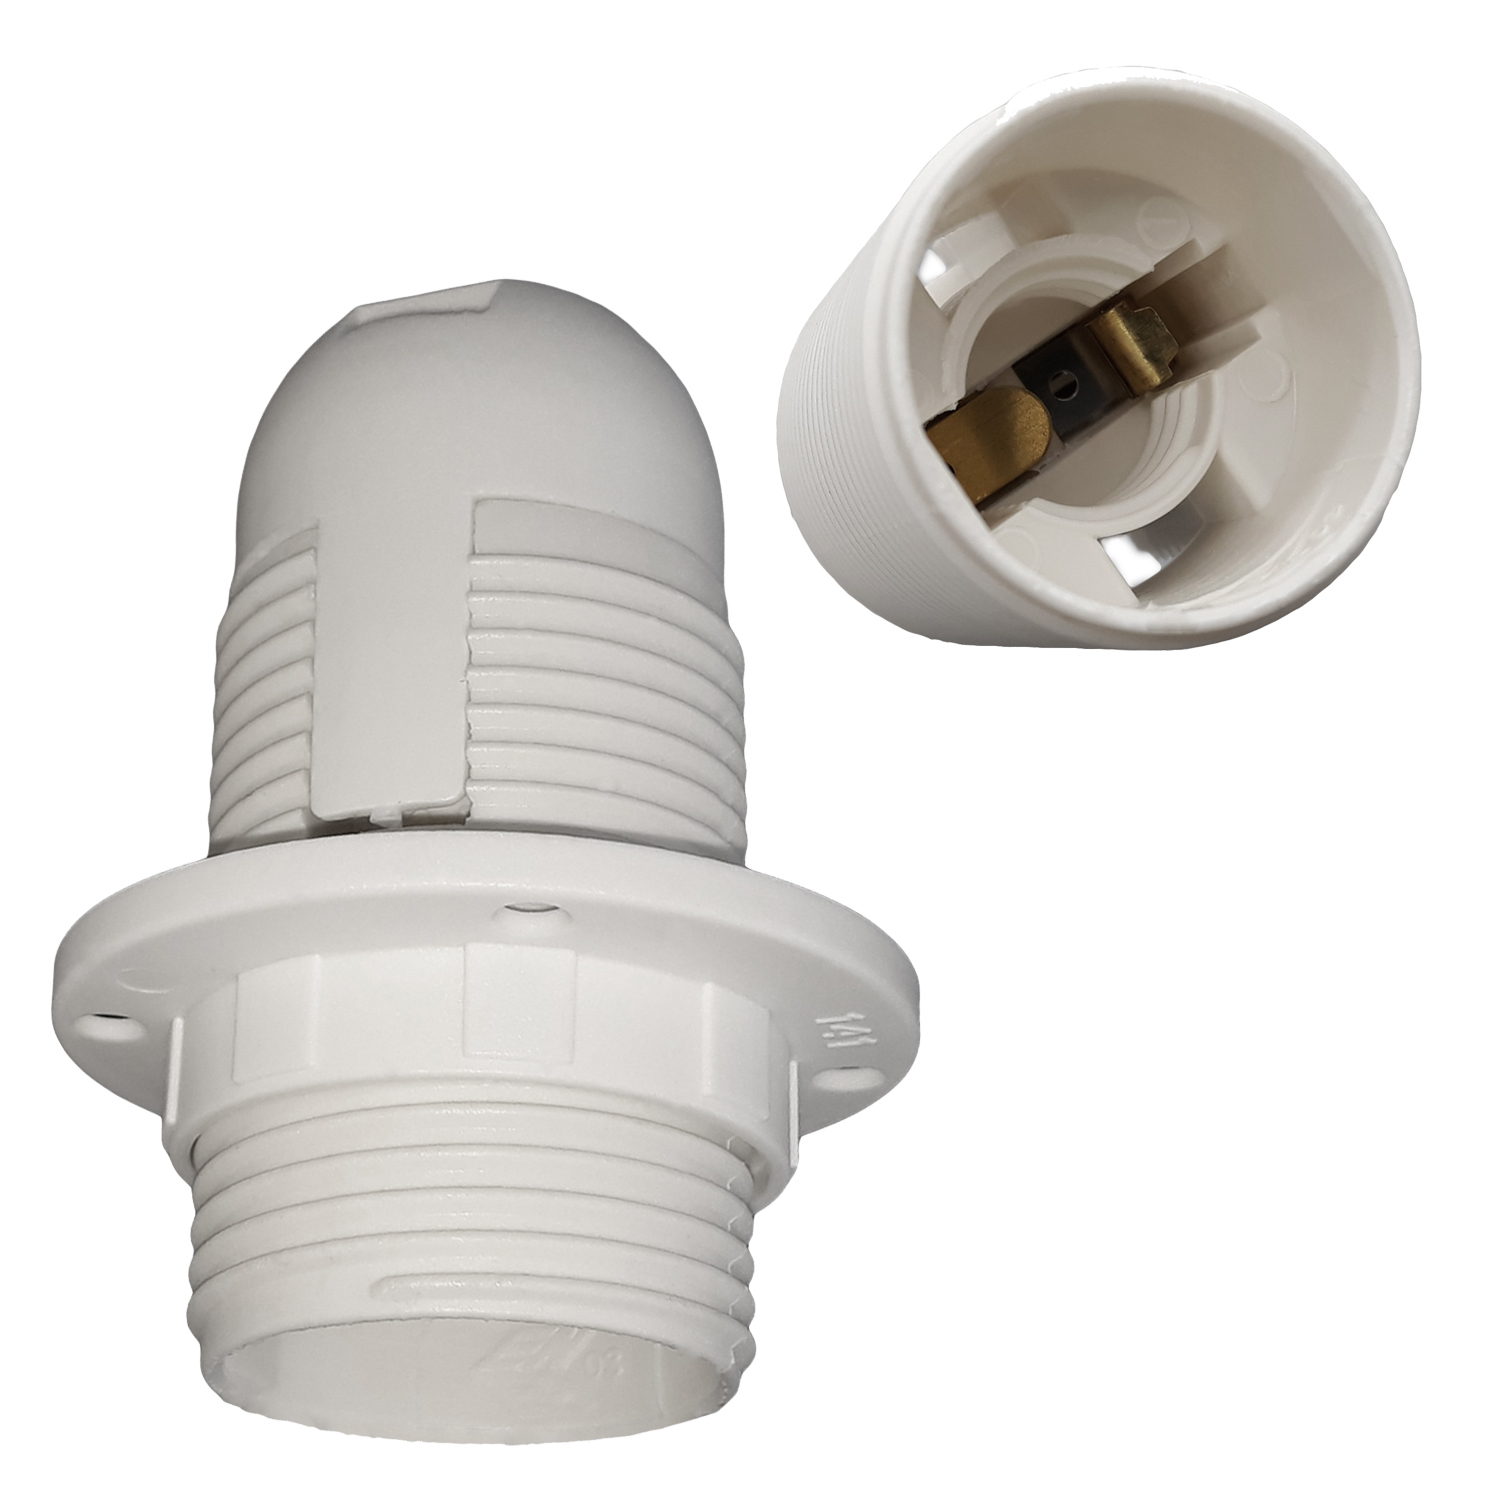 5x Schraubring Iso Kunststoff für Fassung E14 weiß Lampe Leuchte Zubehör 